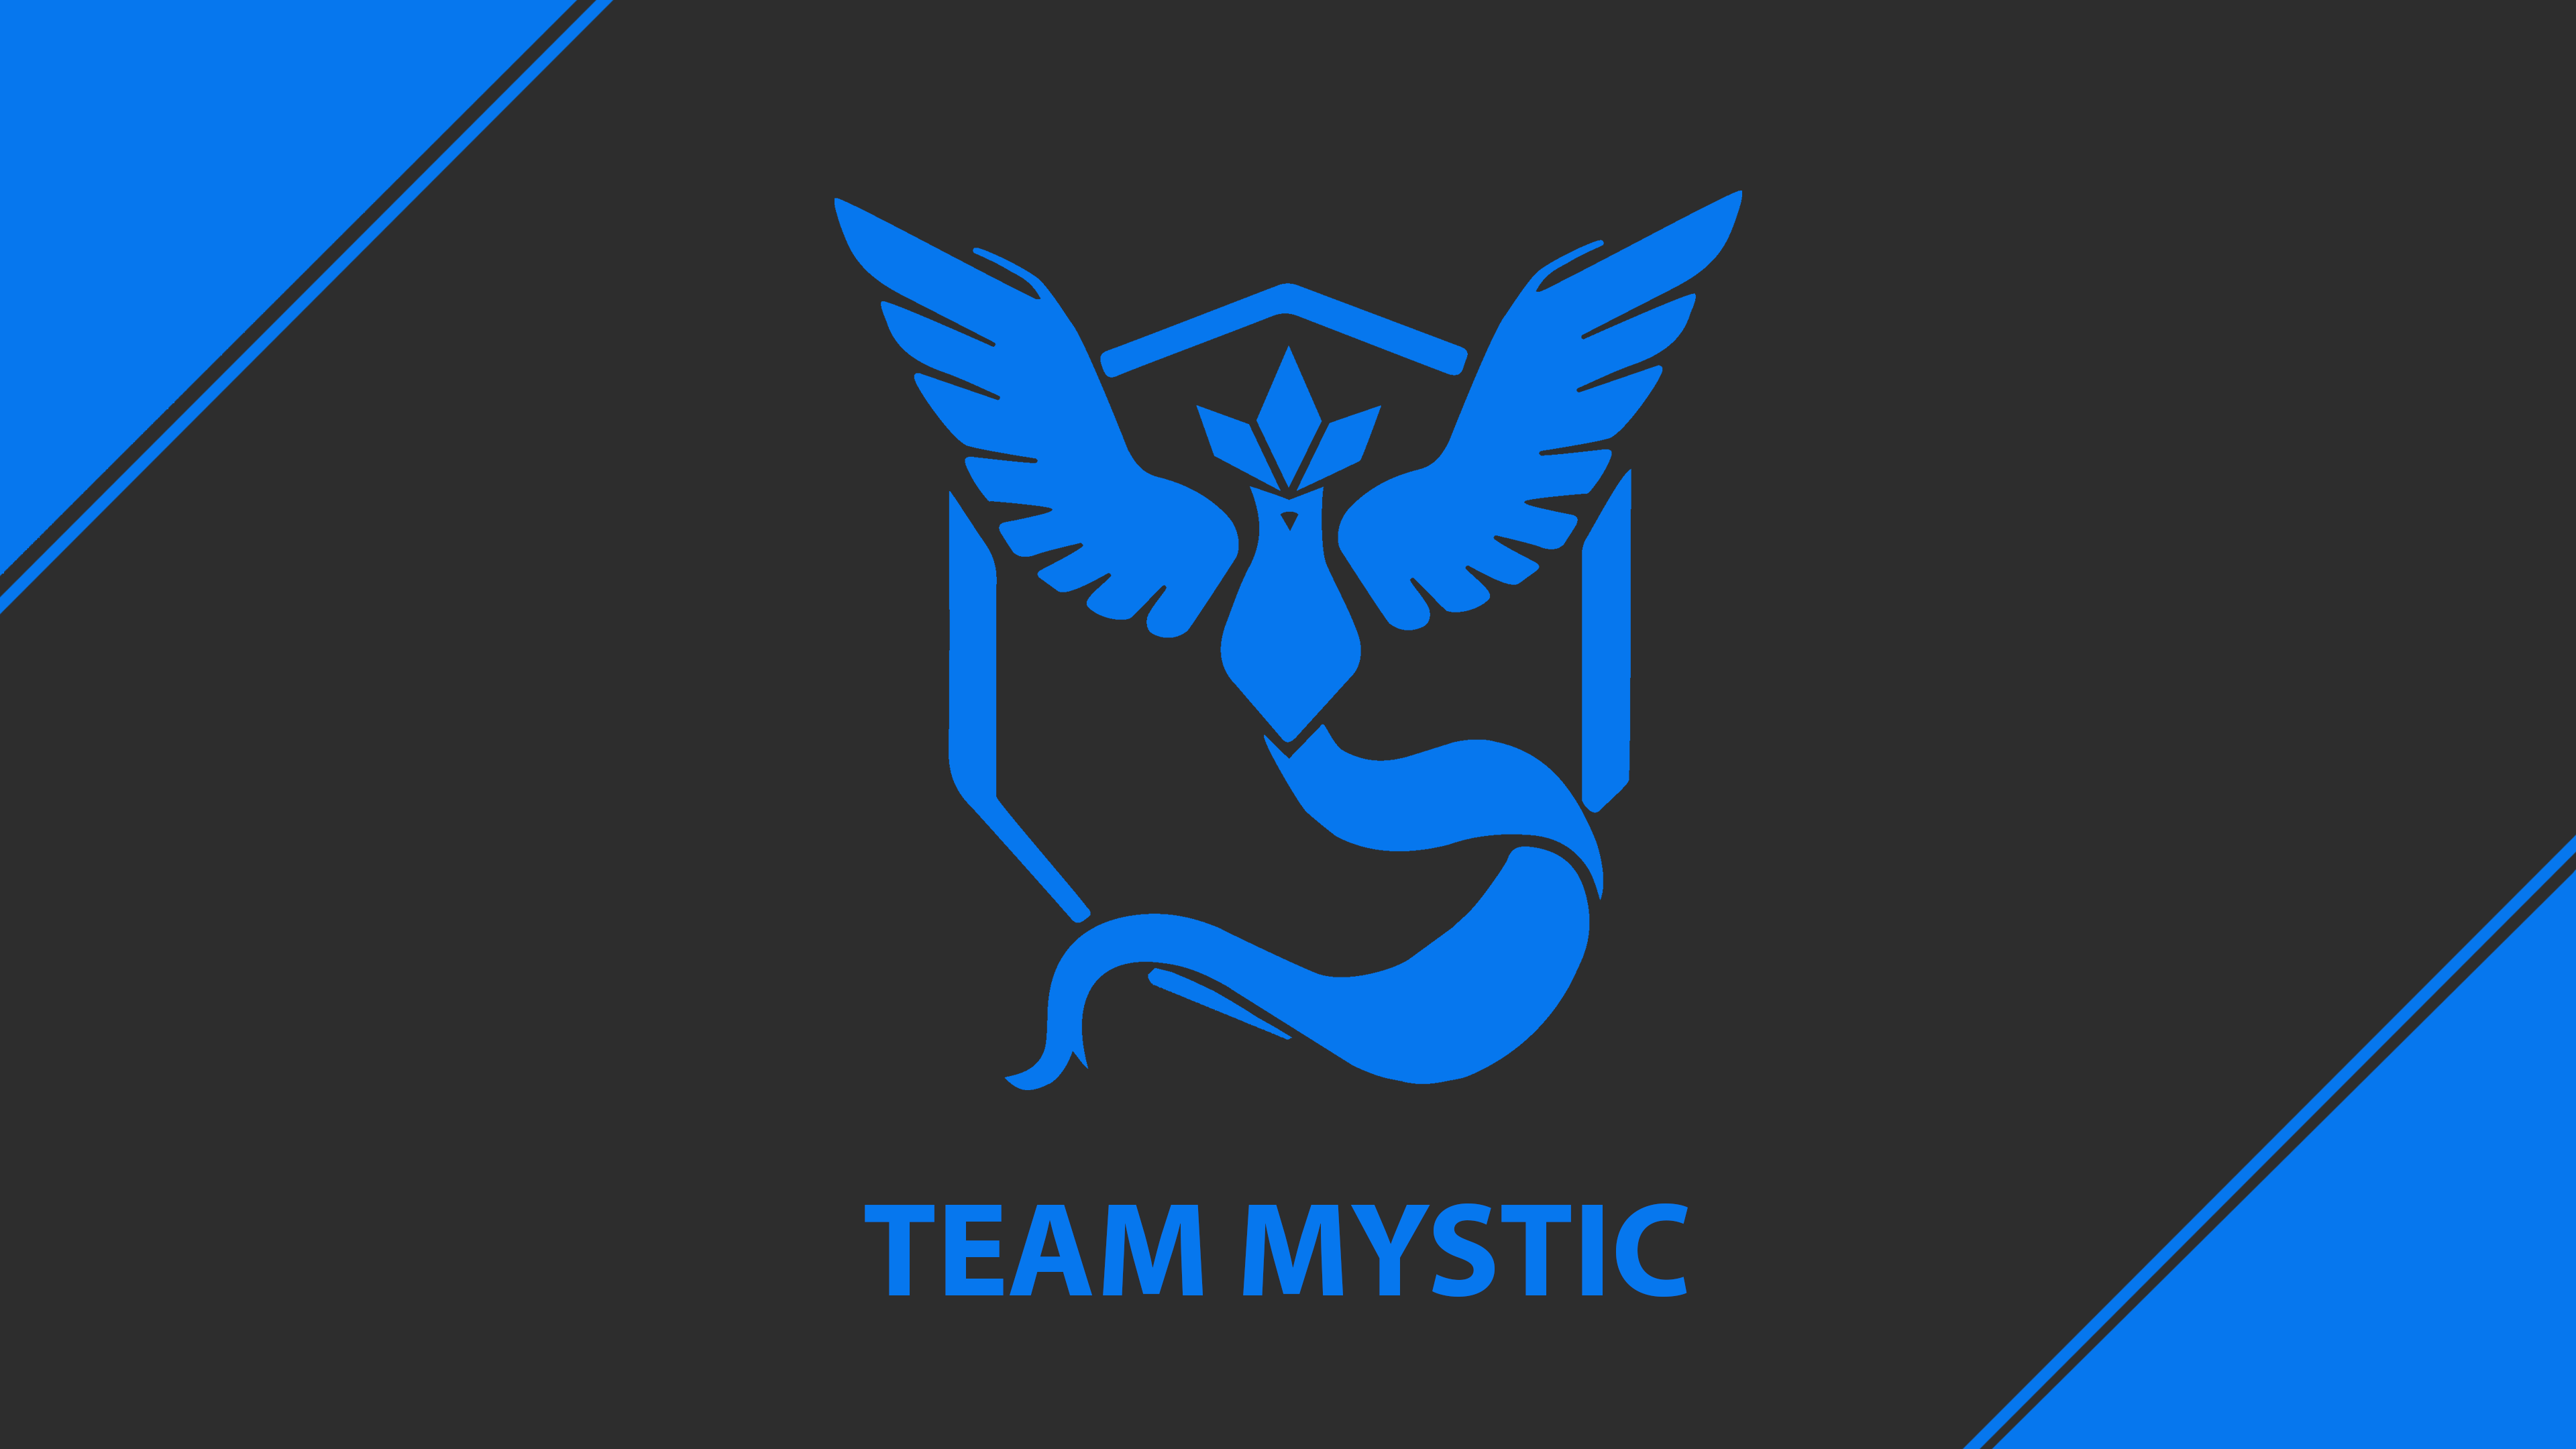 team mystic live wallpaper,logo,emblem,graphics,font,electric blue